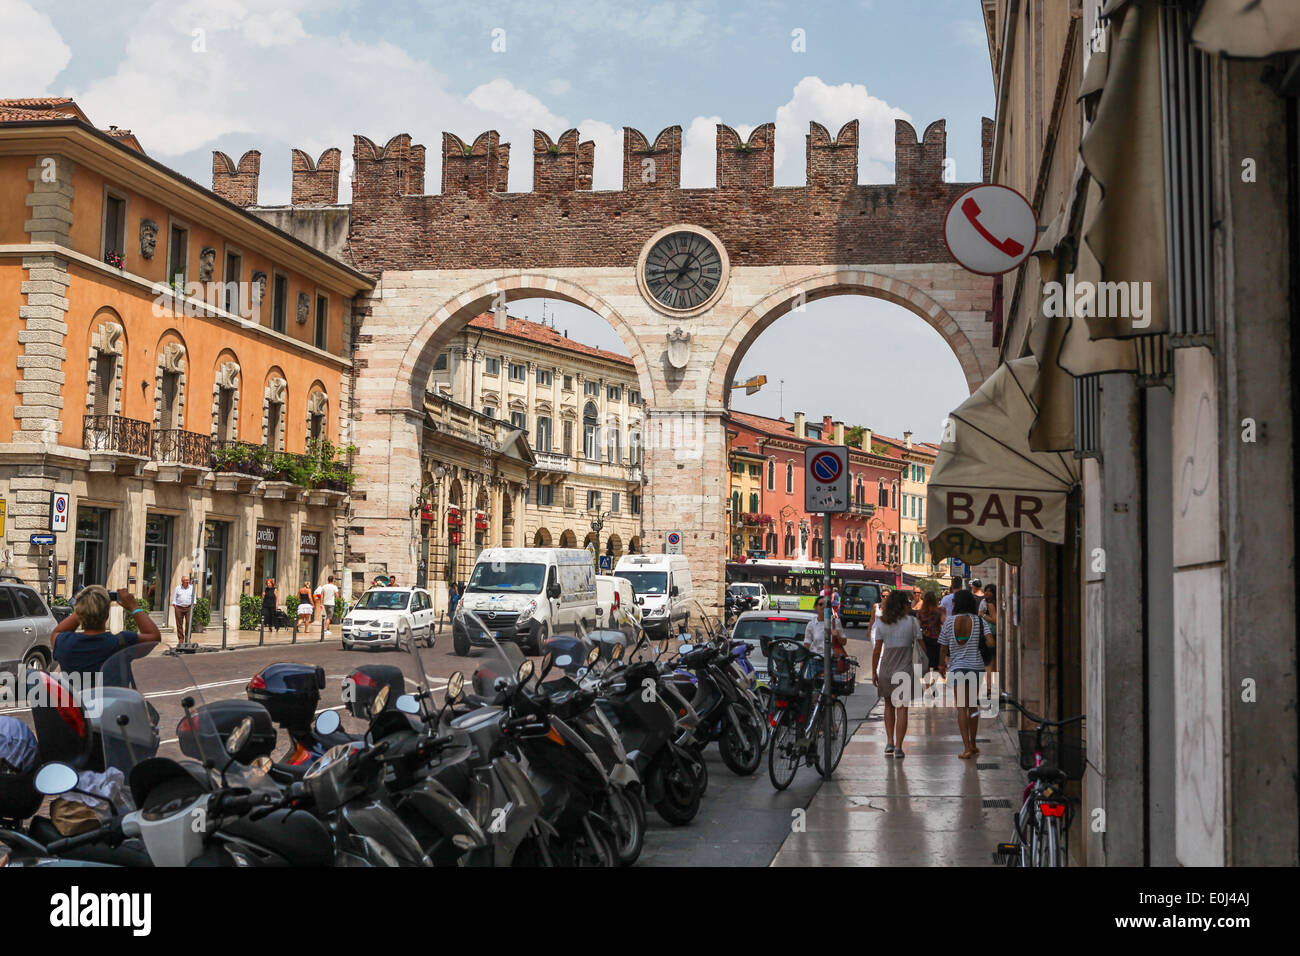 Concurrida calle de Verona con Portoni della Bra, puerta medieval que conduce a la Piazza Bra en el centro histórico de la ciudad. Foto de stock